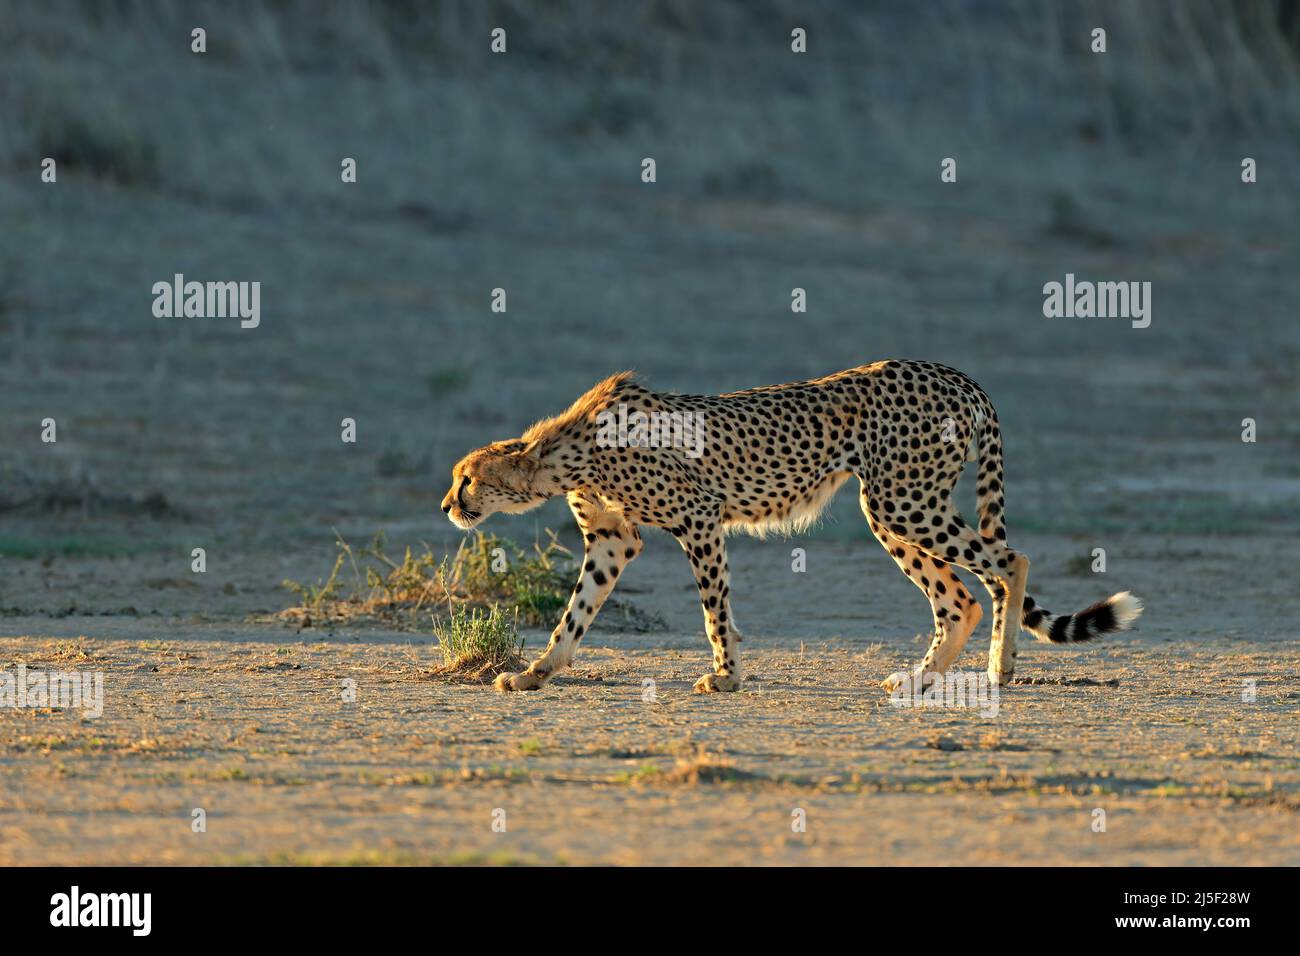 Un guépard (Acinonyx jubatus) qui perce dans son habitat naturel, désert de Kalahari, Afrique du Sud Banque D'Images